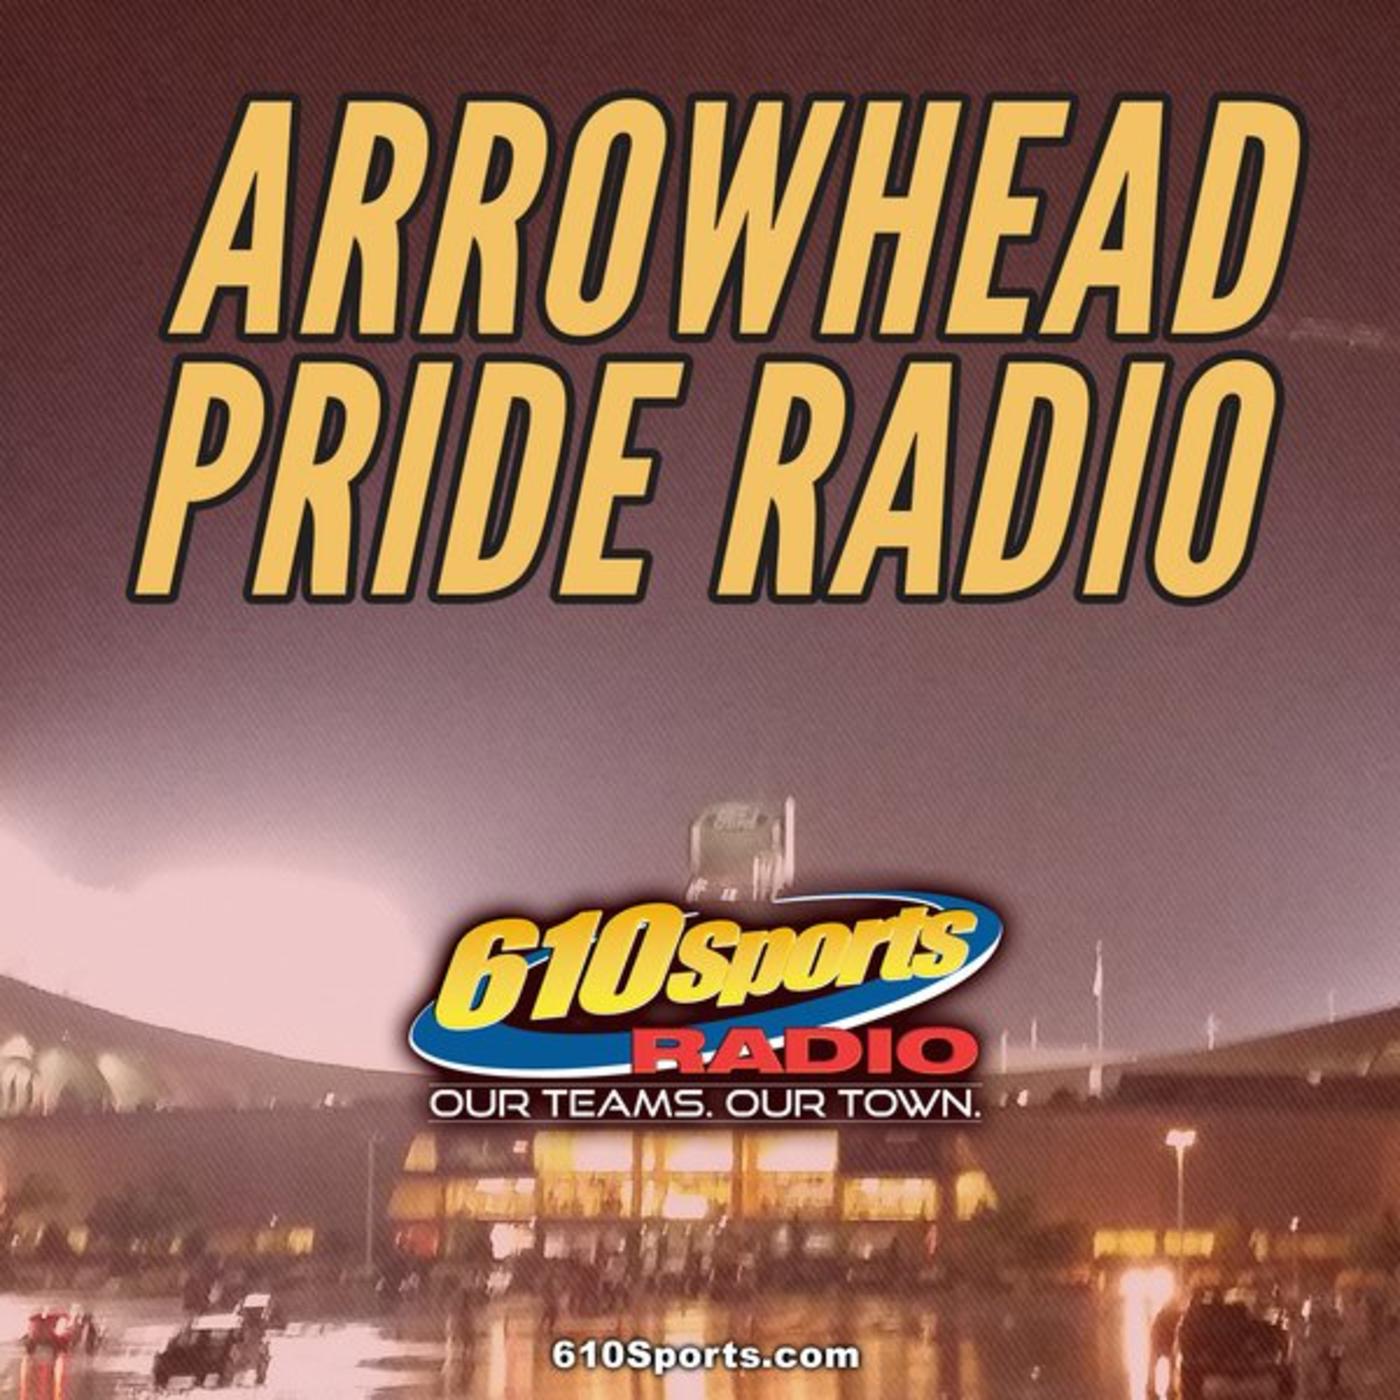 1/31 - Arrowhead Pride Radio